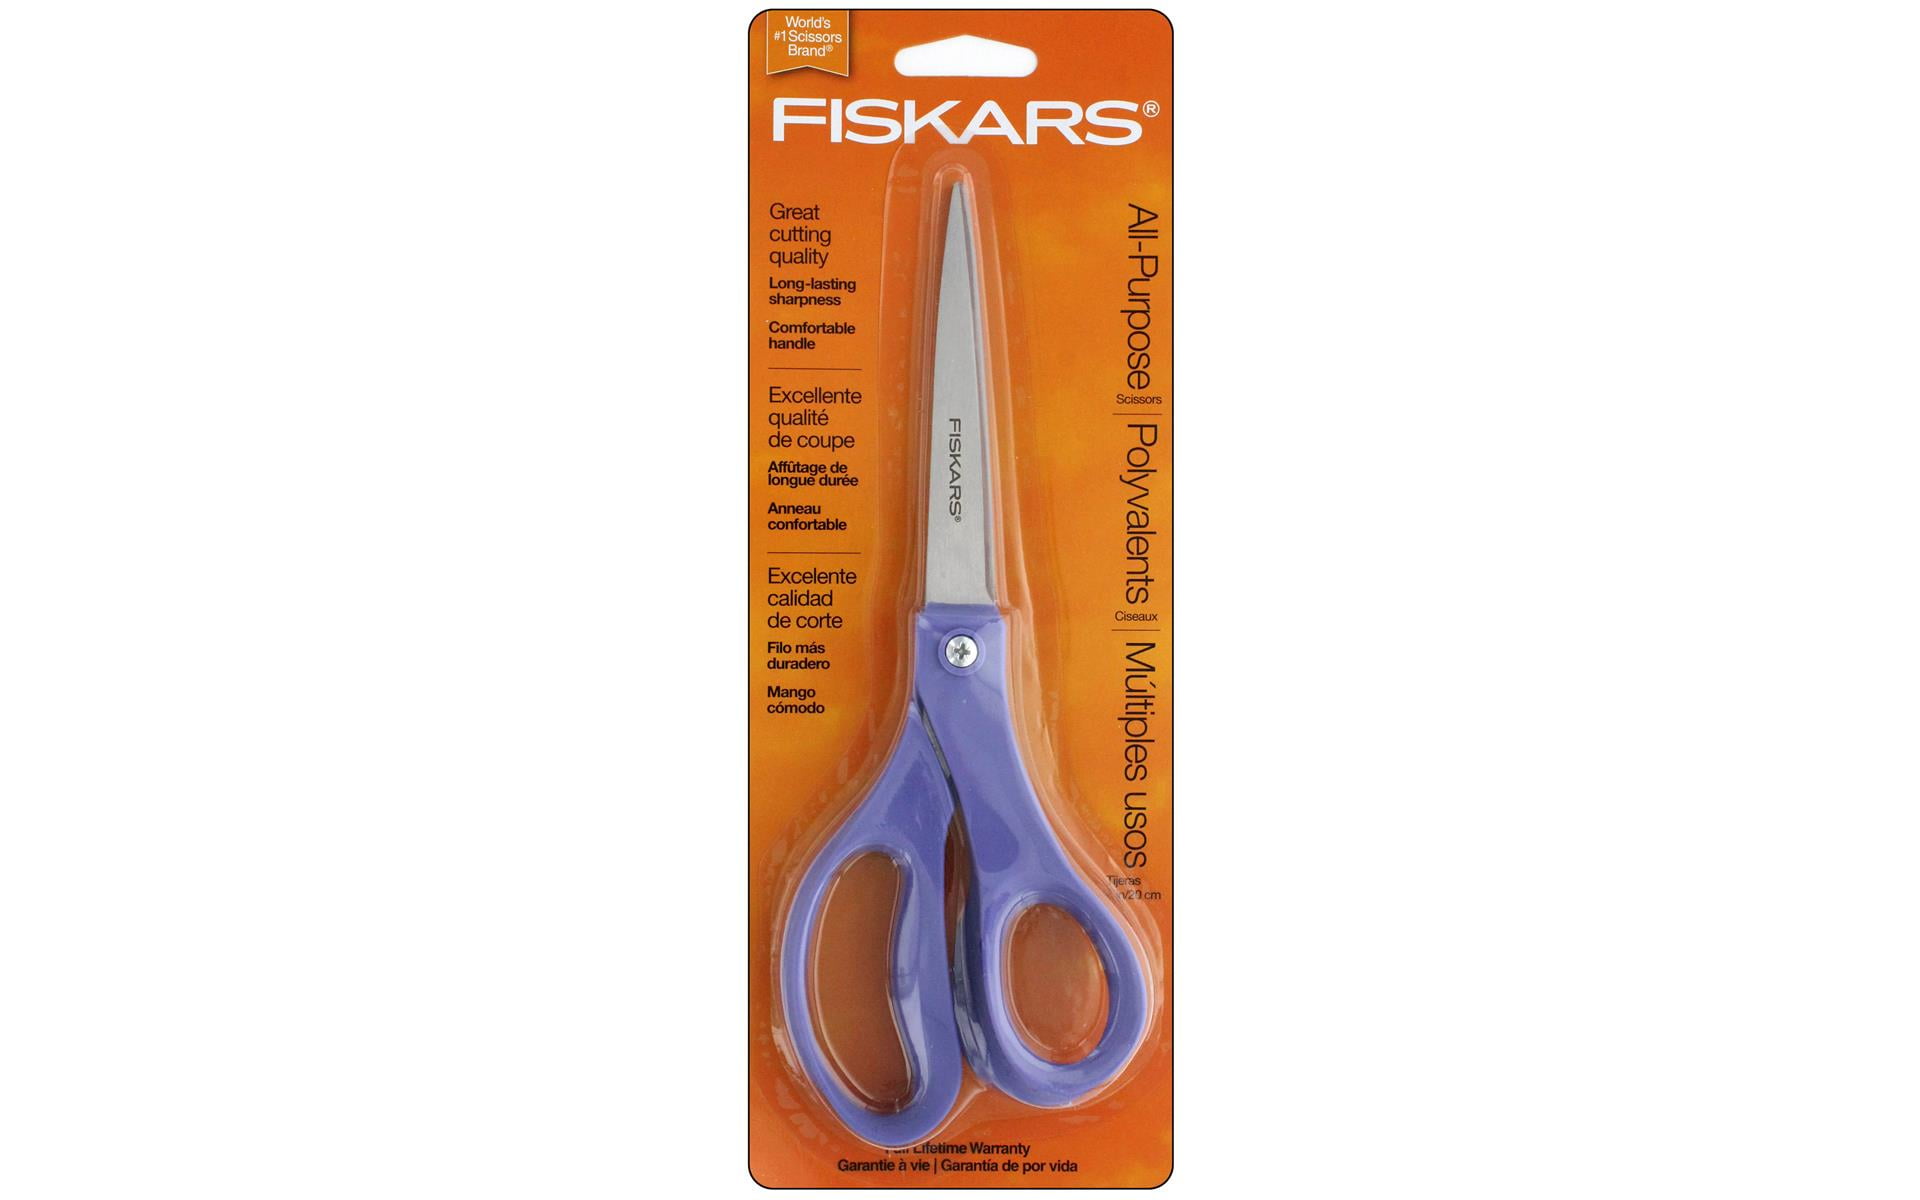 Fiskars, FSK1997001001, Student Scissors, 1 Each, Turquoise,Red